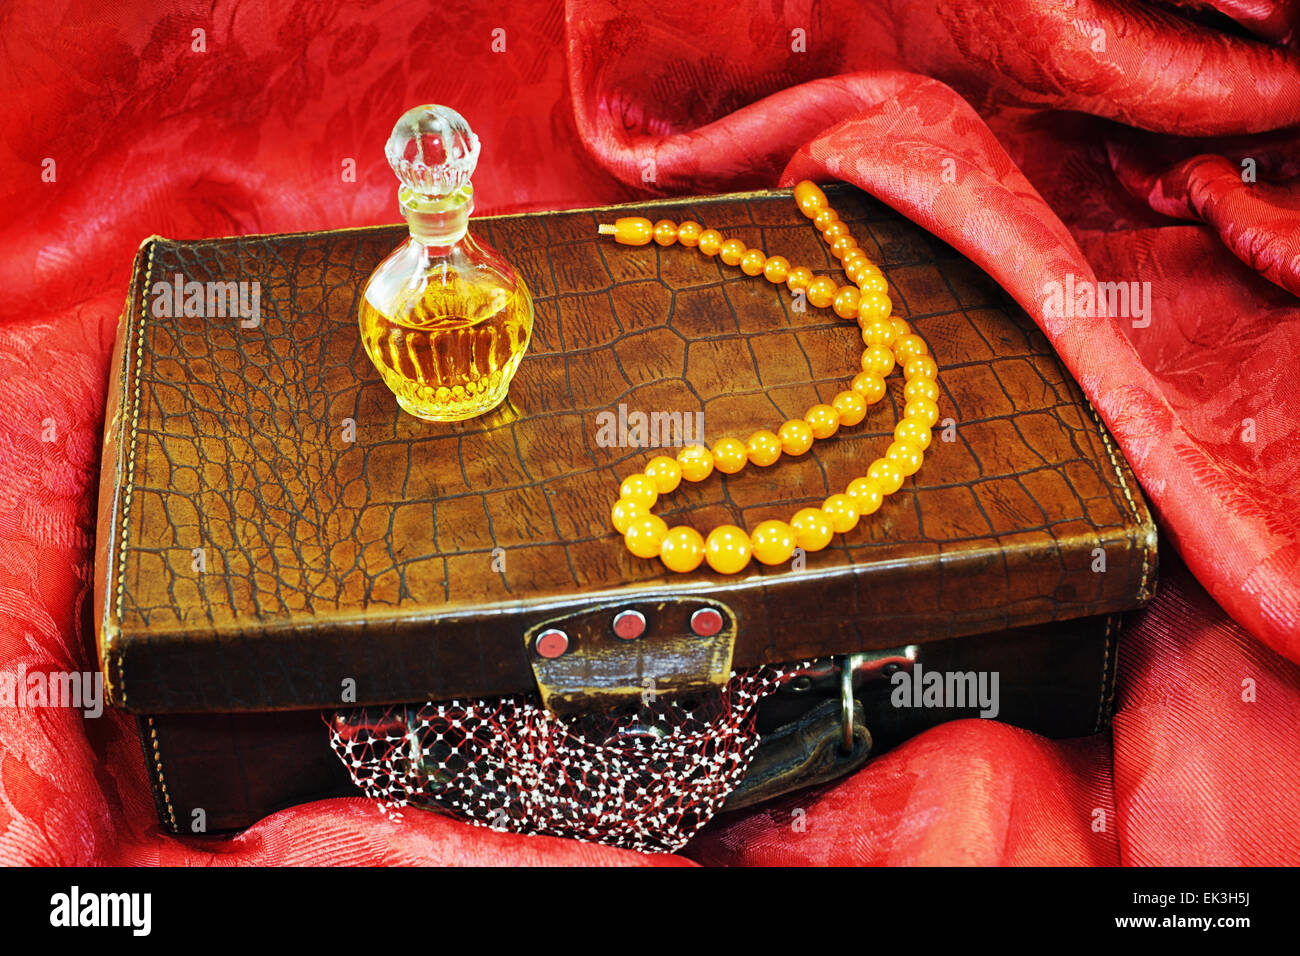 Valise vintage, collier d'ambre, flacon de parfum sur de vieux textiles rouge Banque D'Images